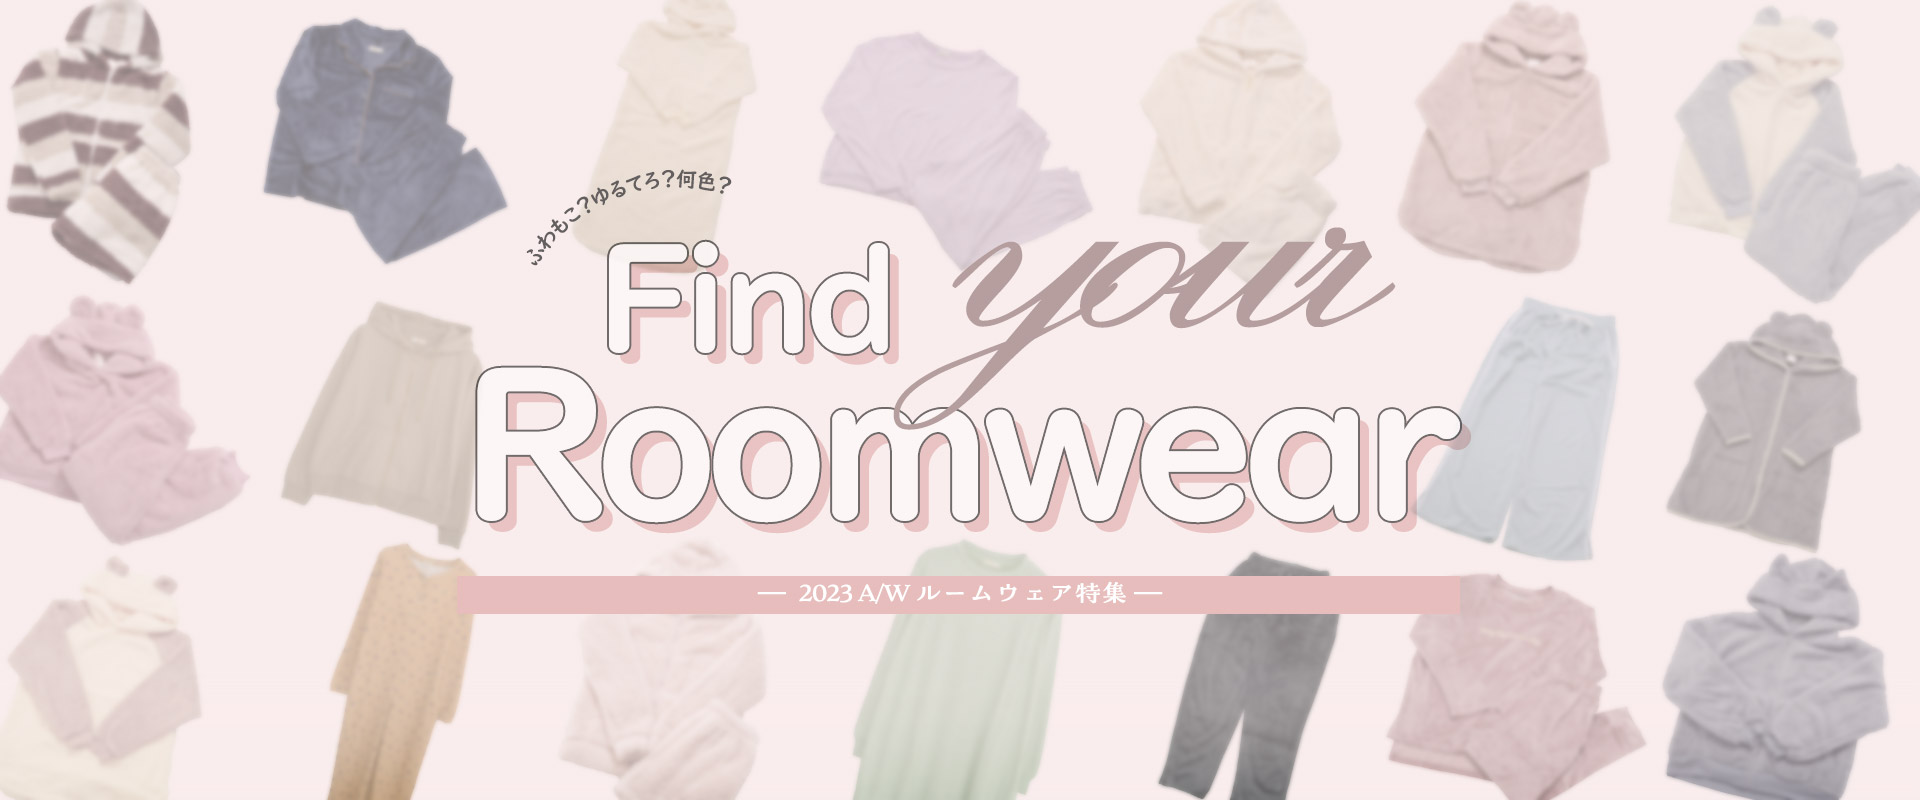 2023A/W Roomwear